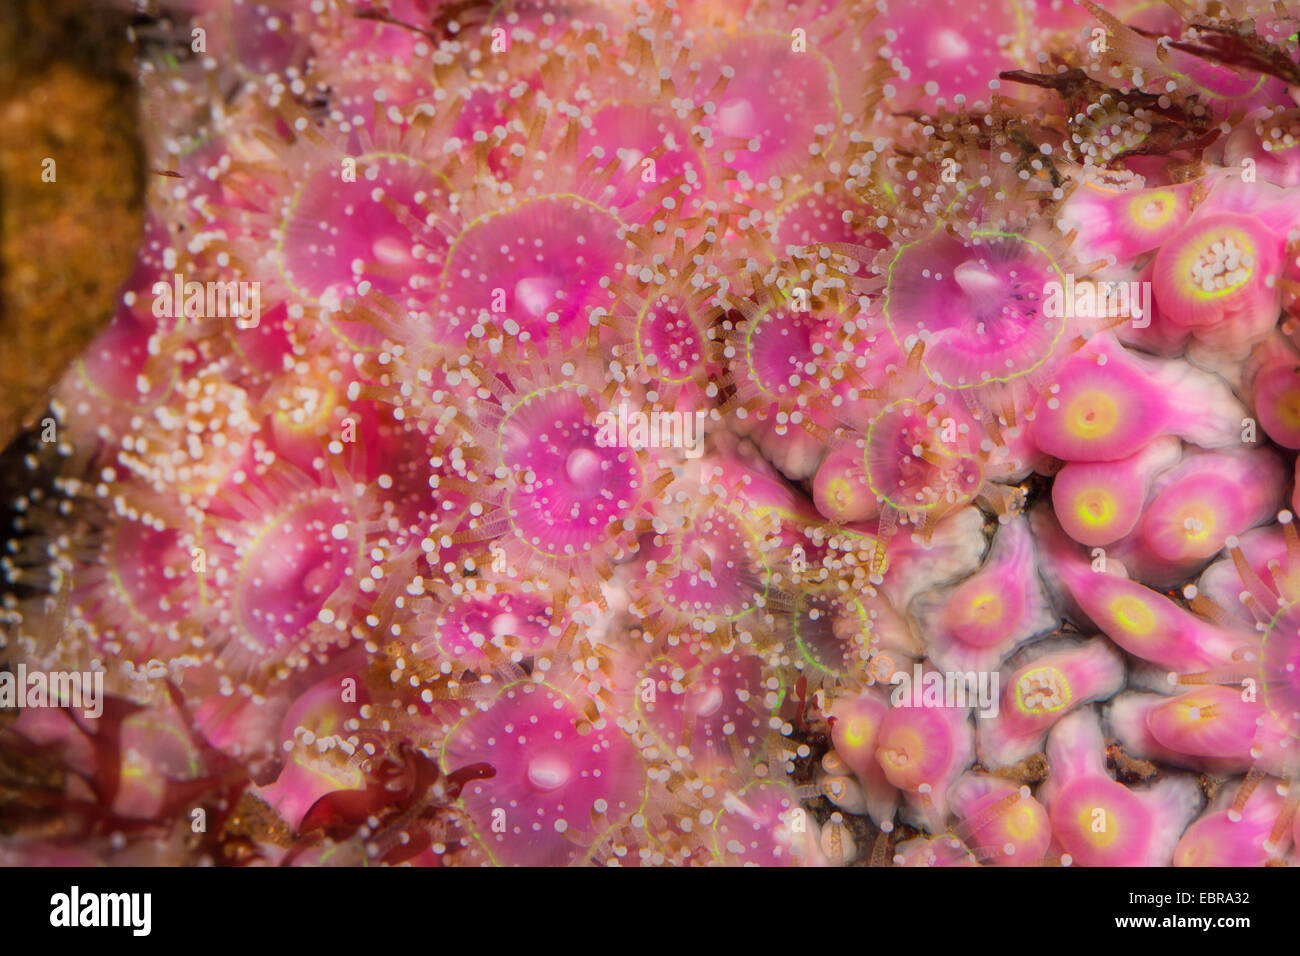 Green jewel anemone (Corynactis viridis), colonie Stock Photo